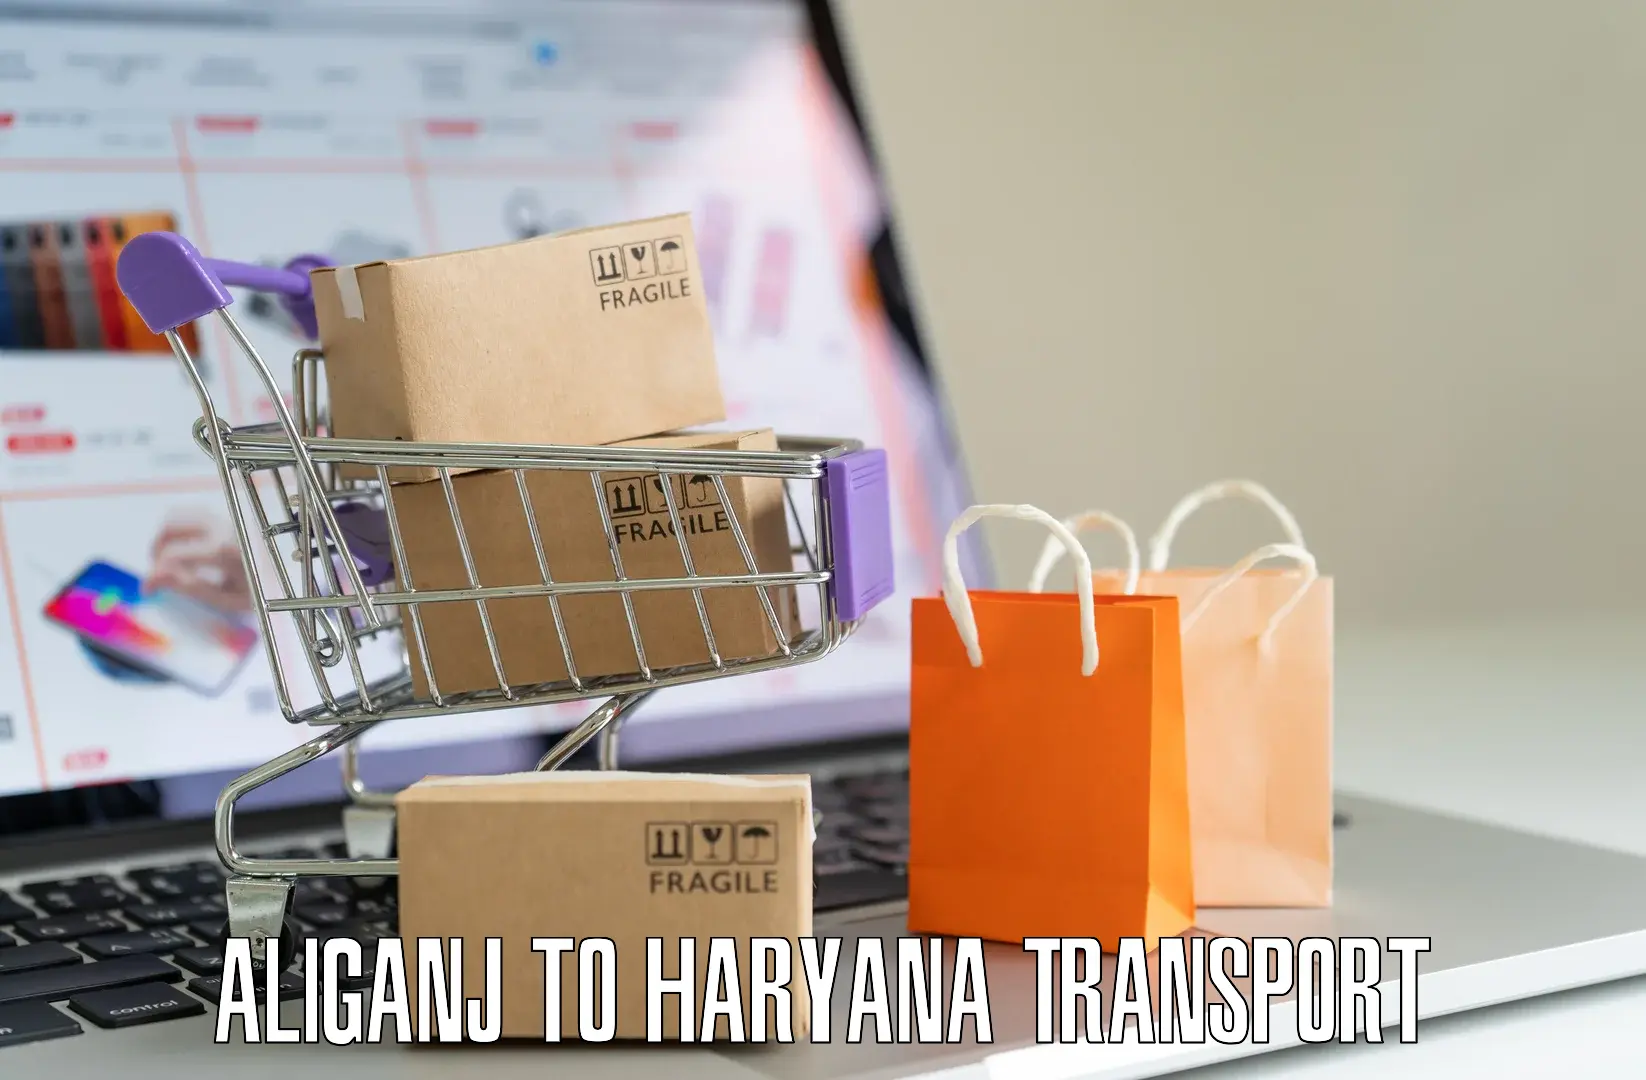 Road transport online services Aliganj to Gurgaon